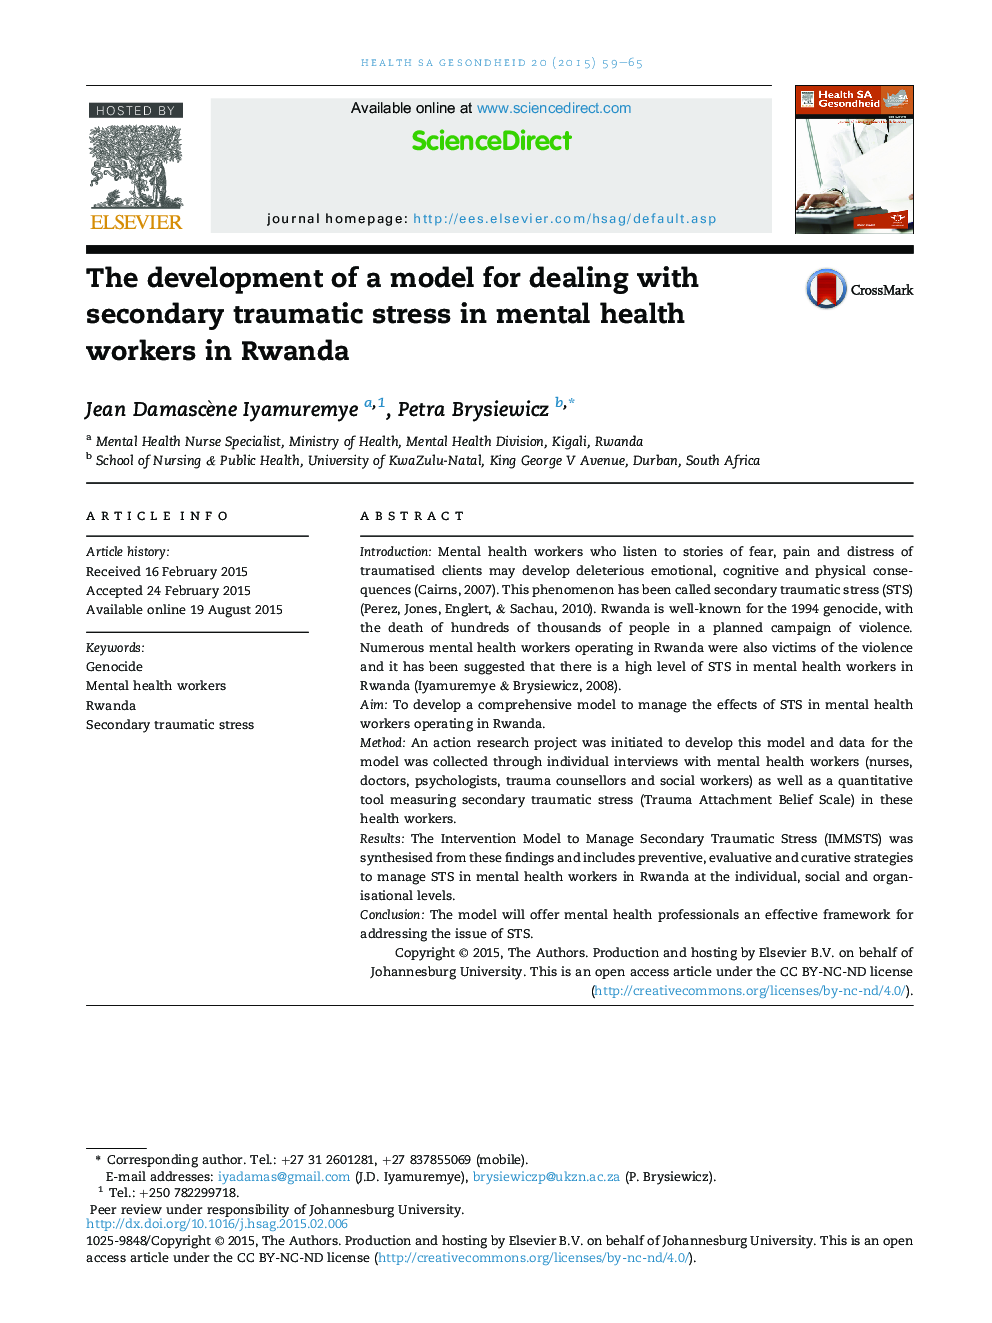 توسعه یک مدل برای مقابله با استرس پس از سانحه در کارکنان بهداشت روان در رواندا